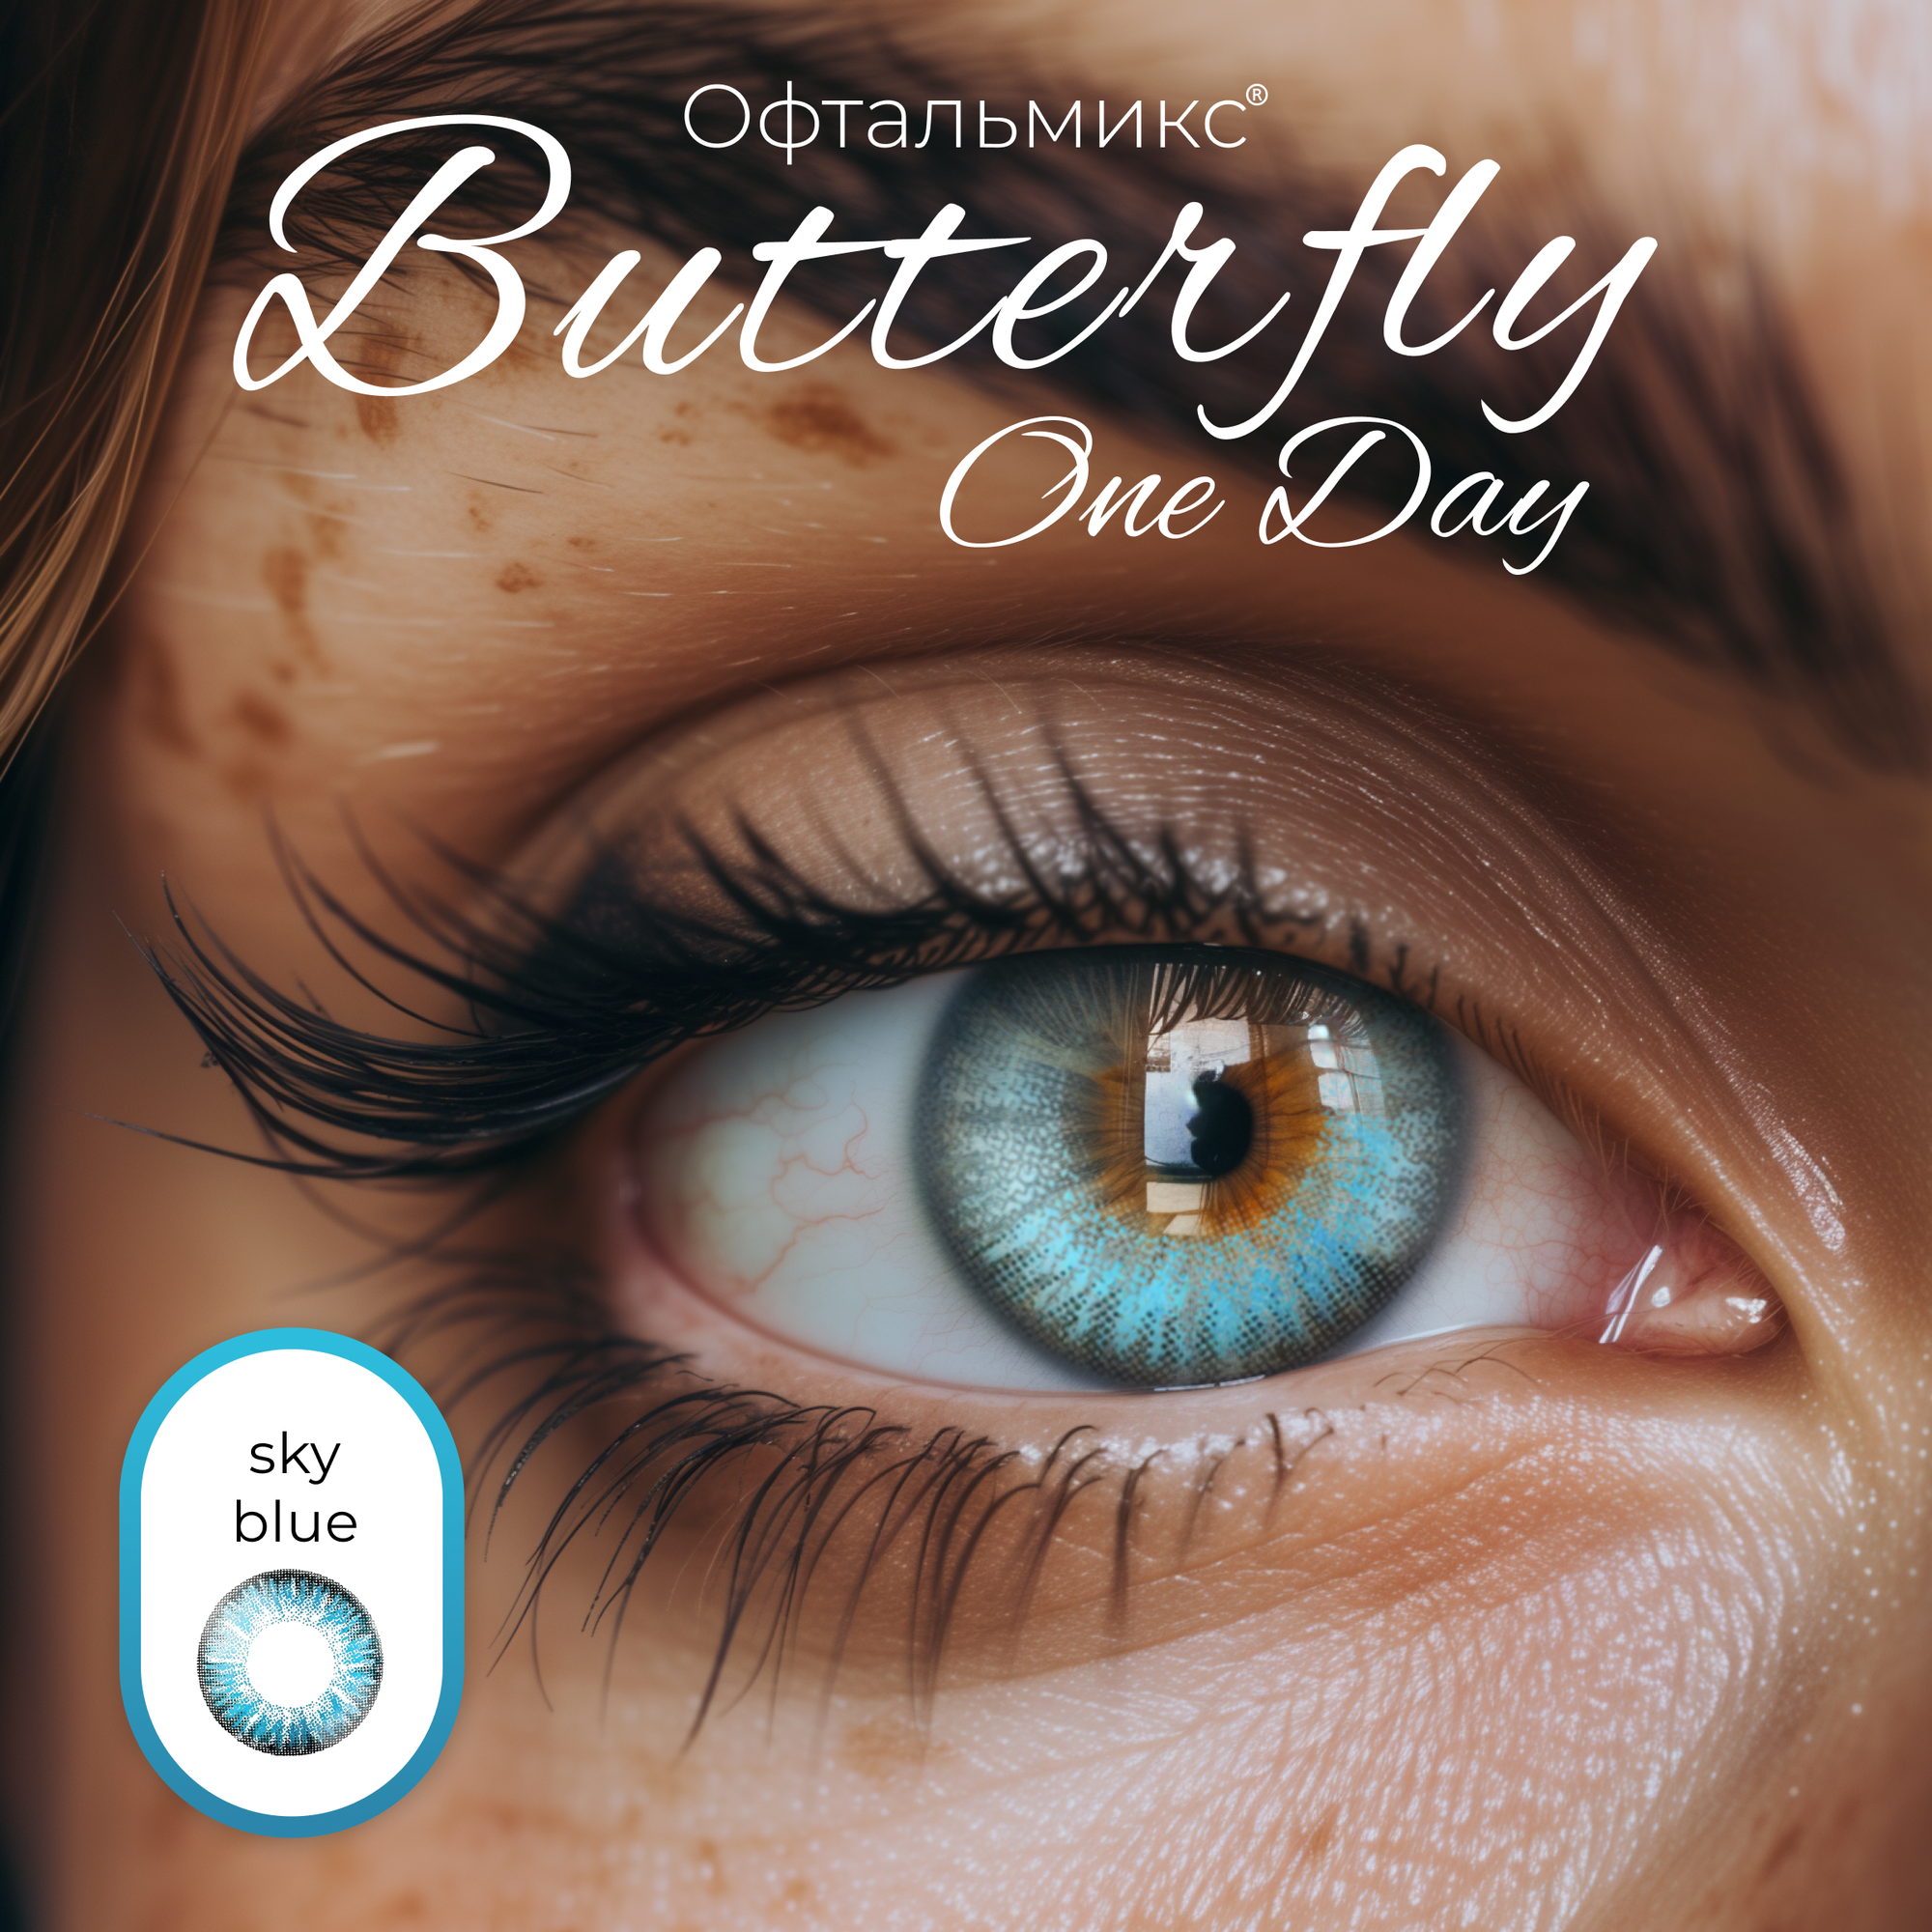 Цветные контактные линзы Офтальмикс Butterfly One Day (2 линзы) -5.50 R 8.6 Sky Blue (Голубой)